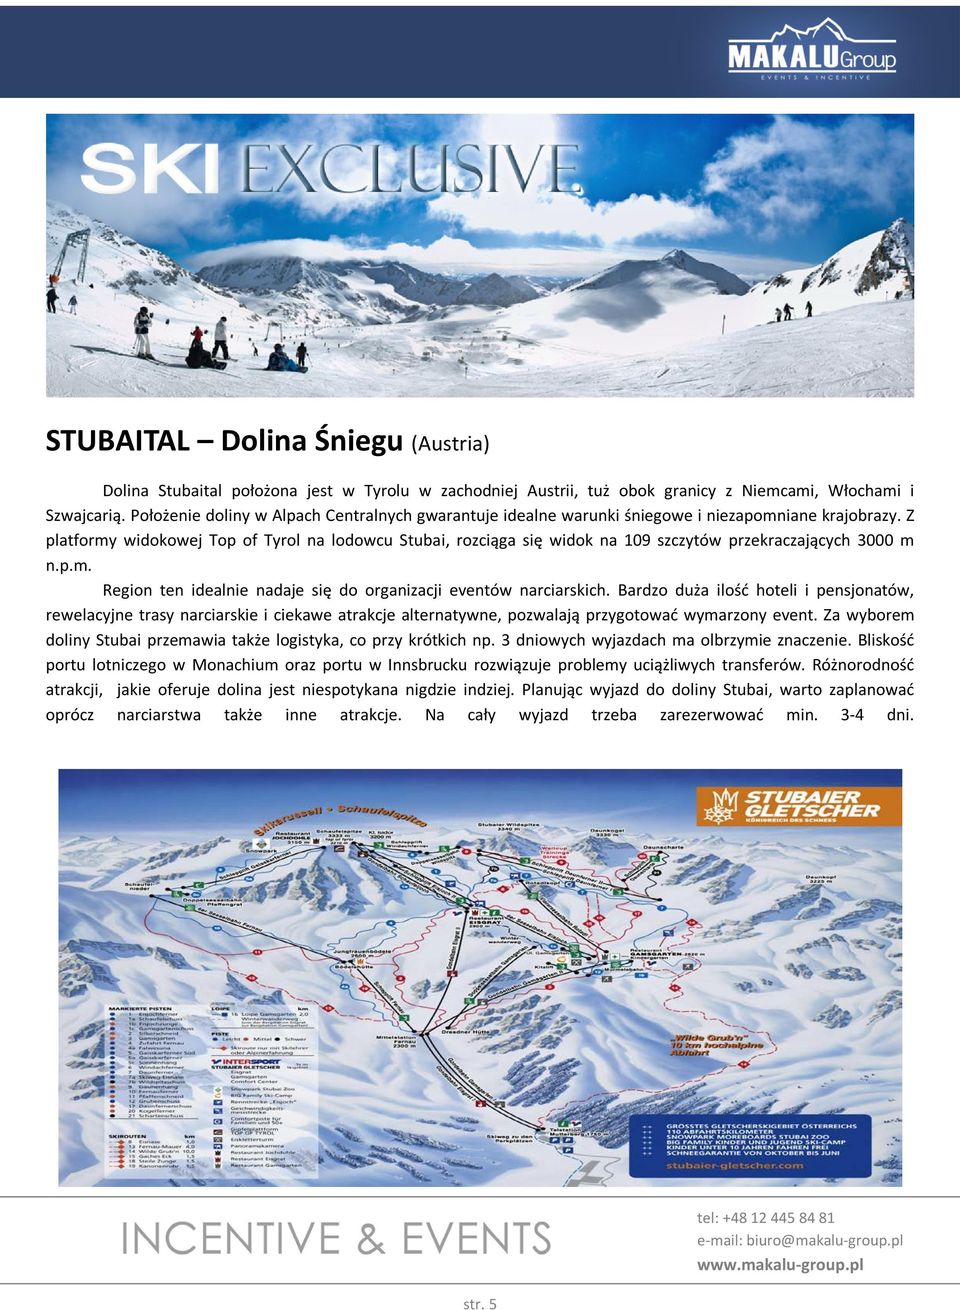 Z platformy widokowej Top of Tyrol na lodowcu Stubai, rozciąga się widok na 109 szczytów przekraczających 3000 m n.p.m. Region ten idealnie nadaje się do organizacji eventów narciarskich.